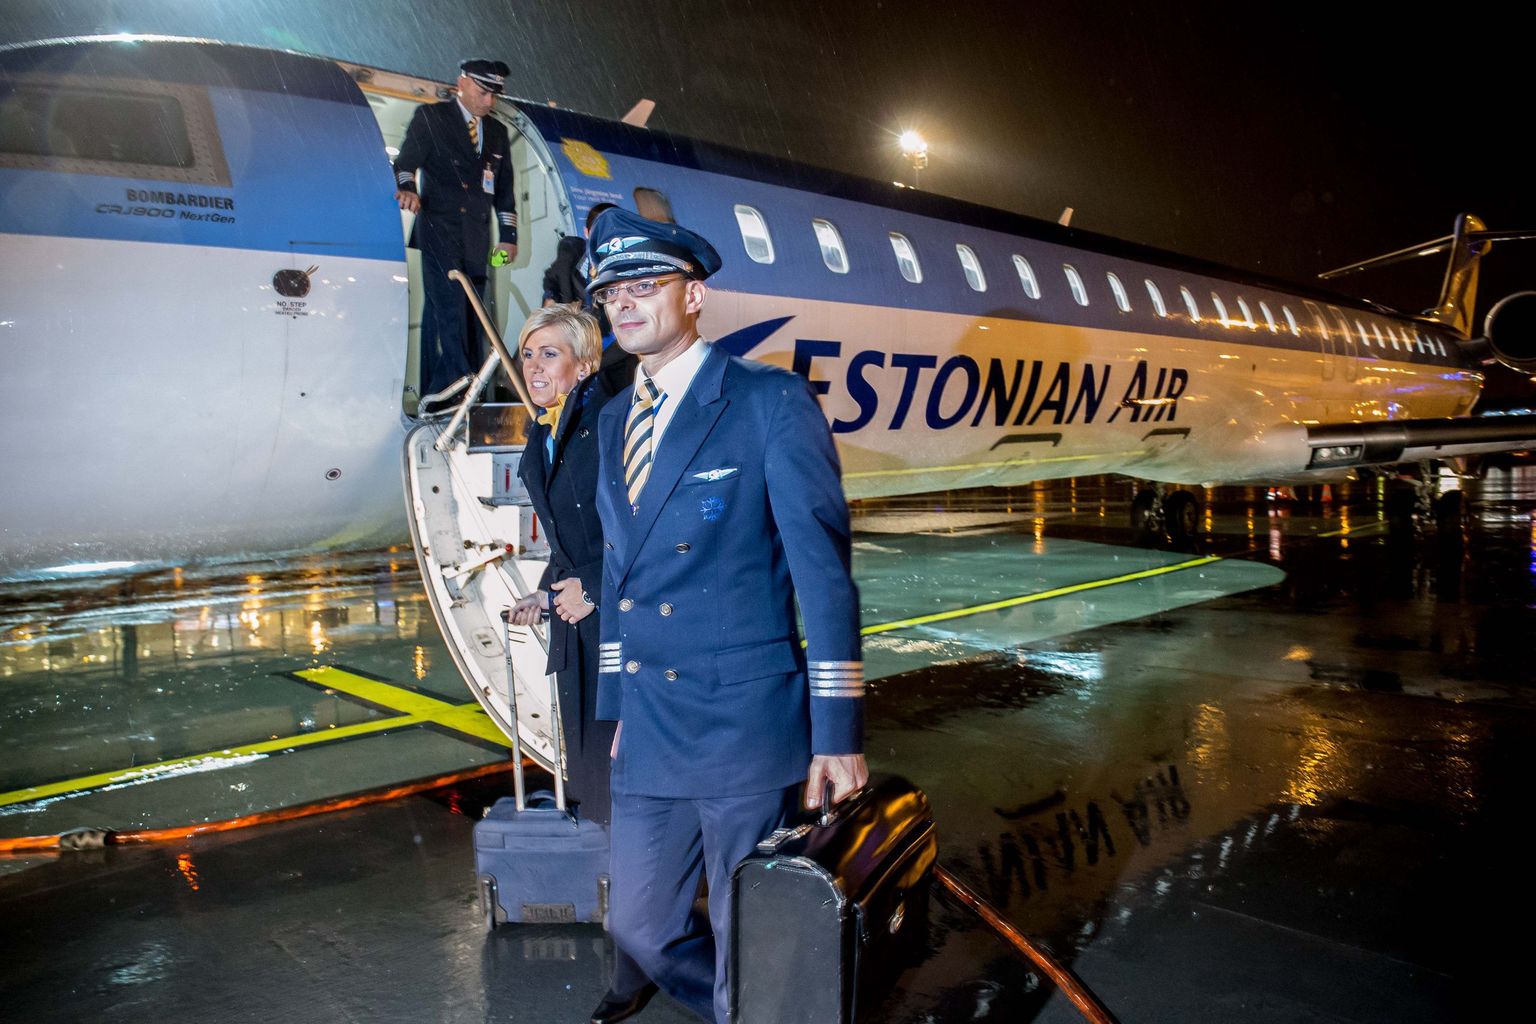 Estonian Airi viimane lend 2015. aasta 7. novembril. Selleks ajaks oli uue rahvusliku lennufirma nimi juba valitud ja Nordic Aviation Group äriregistris registreeritud.